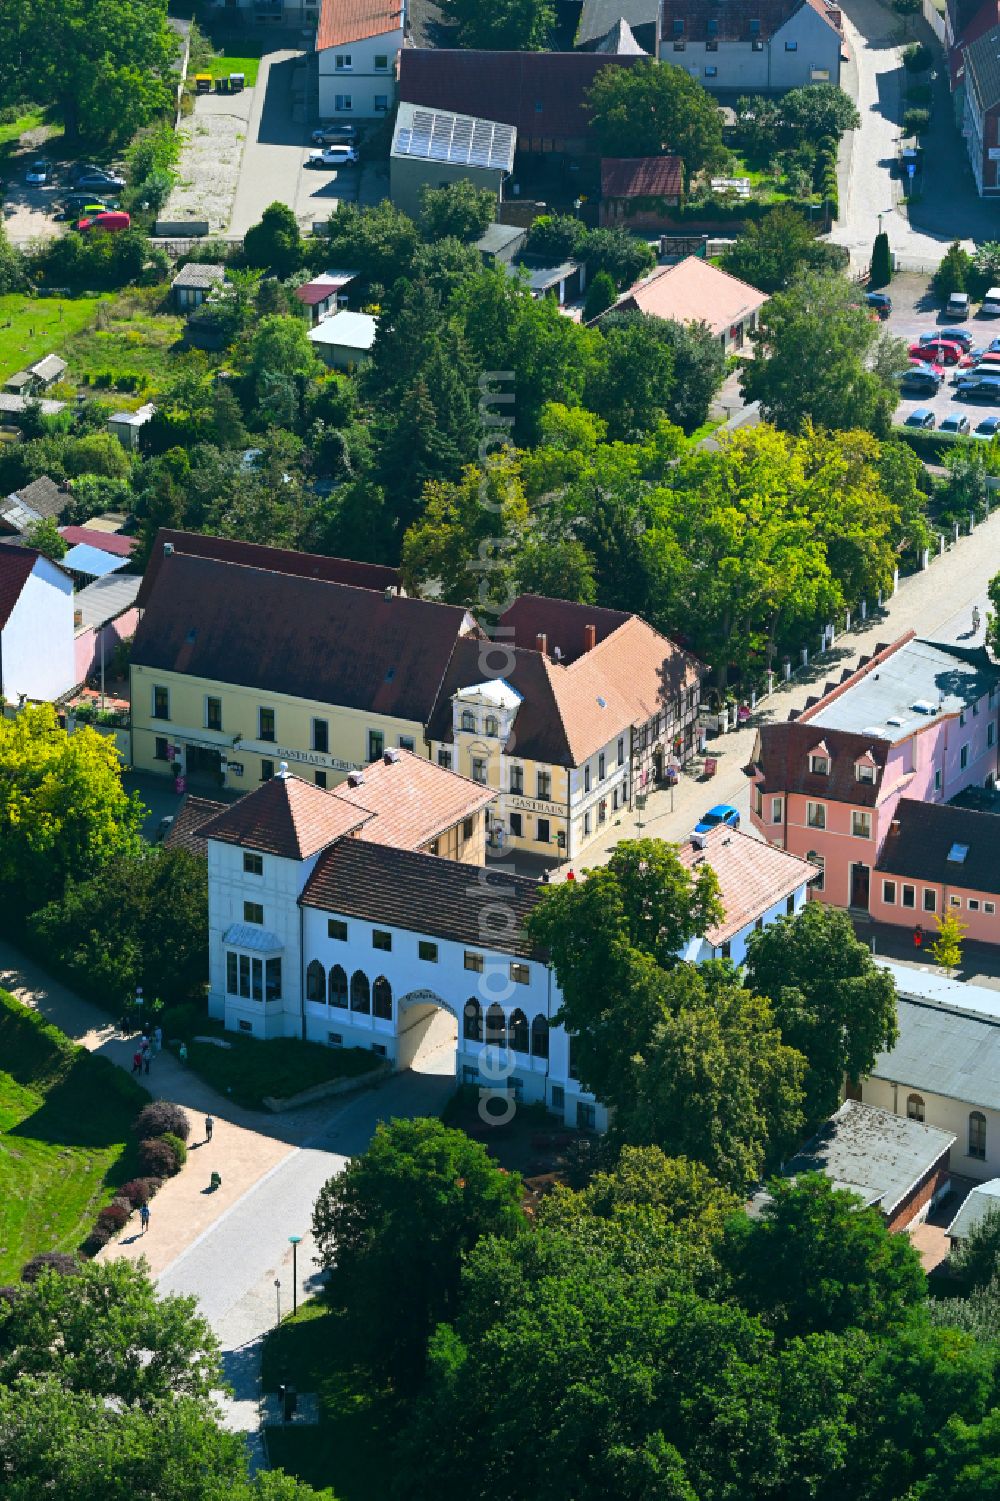 Aerial image Wörlitz - Building of the restaurant Historischer Gasthof Zum Eichenkranz on the street Angergasse - Neuer Wall in Woerlitz in the state Saxony-Anhalt, Germany